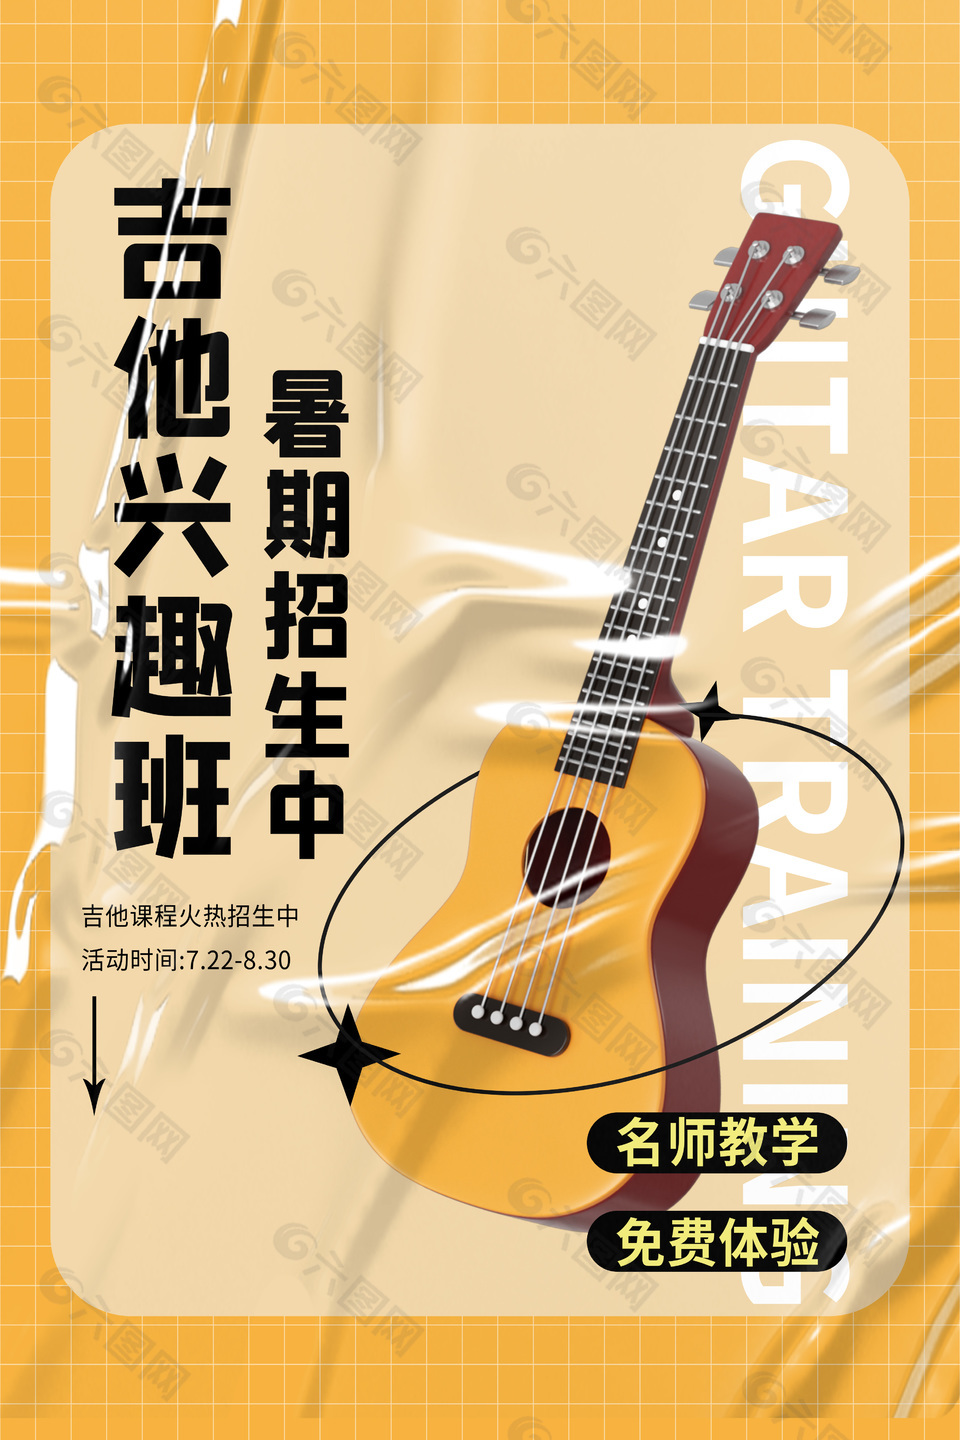 吉他兴趣班暑期招生简约质感宣传海报